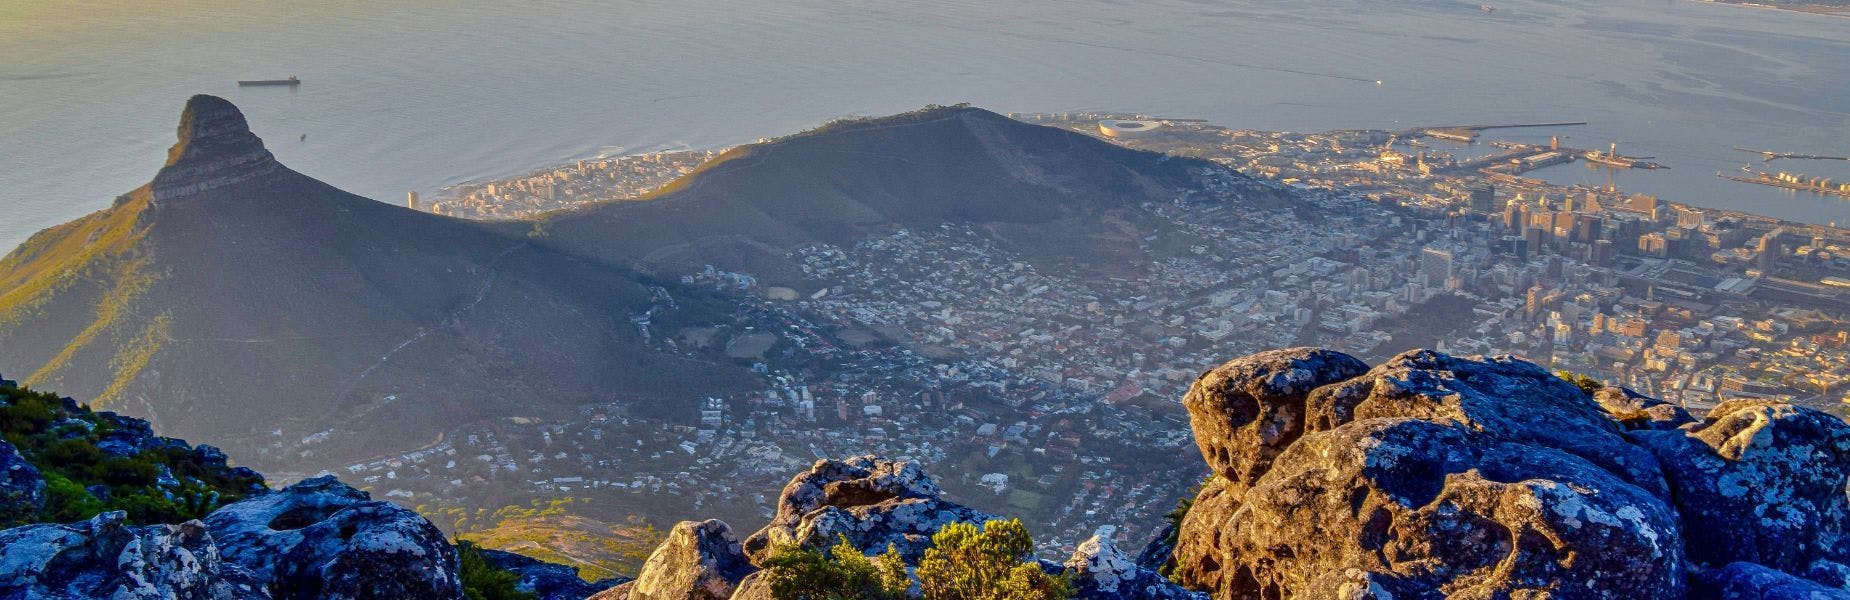 Uitzicht vanaf Tafelberg op Lion's Head en het centrum van Kaapstad